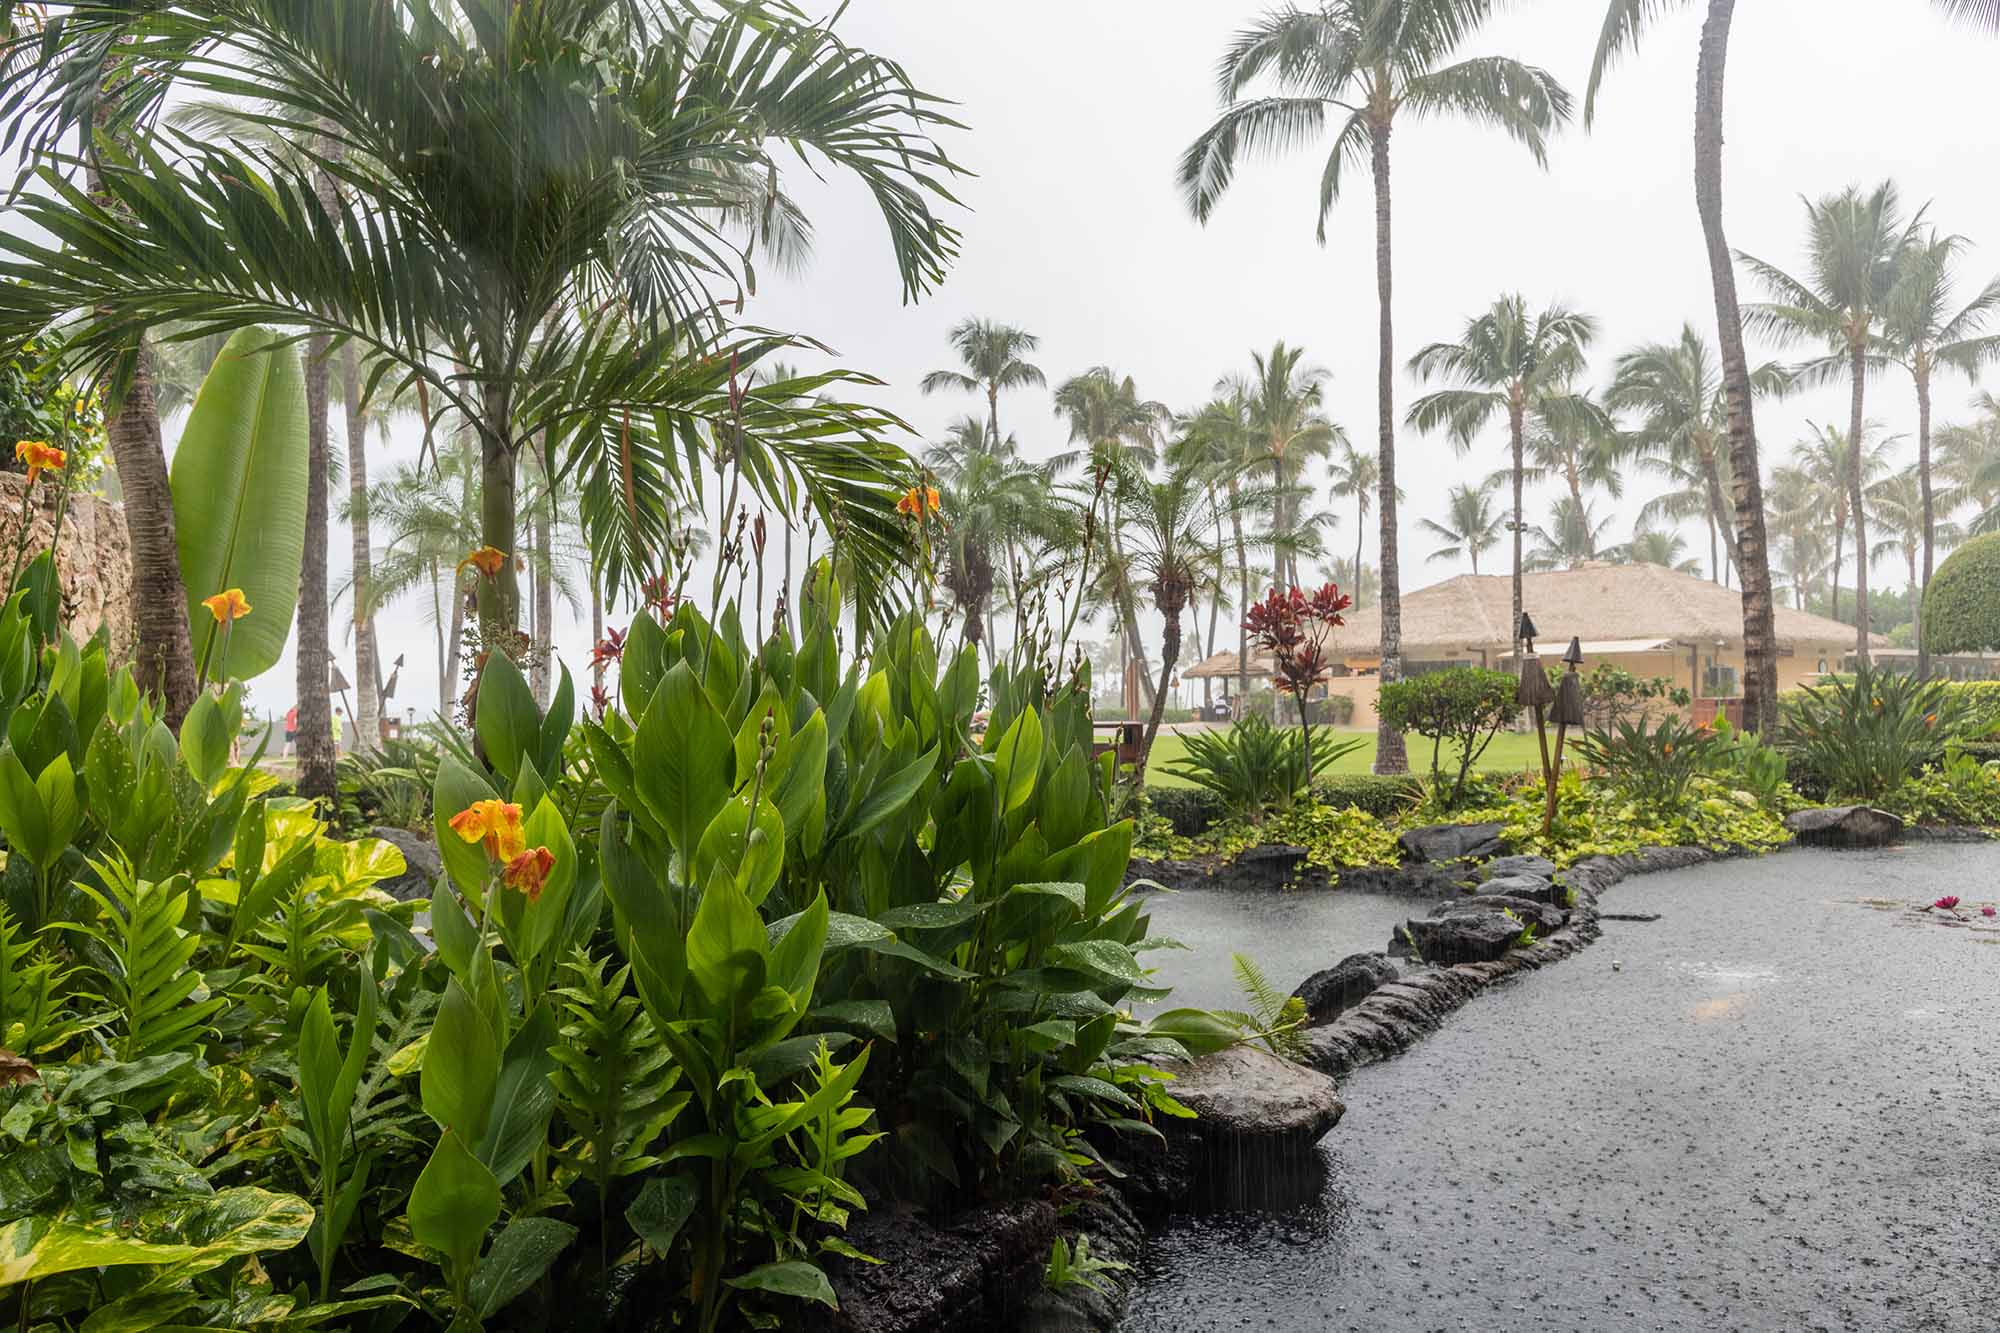 regn i hawaii, en av de regnigaste staterna i usa